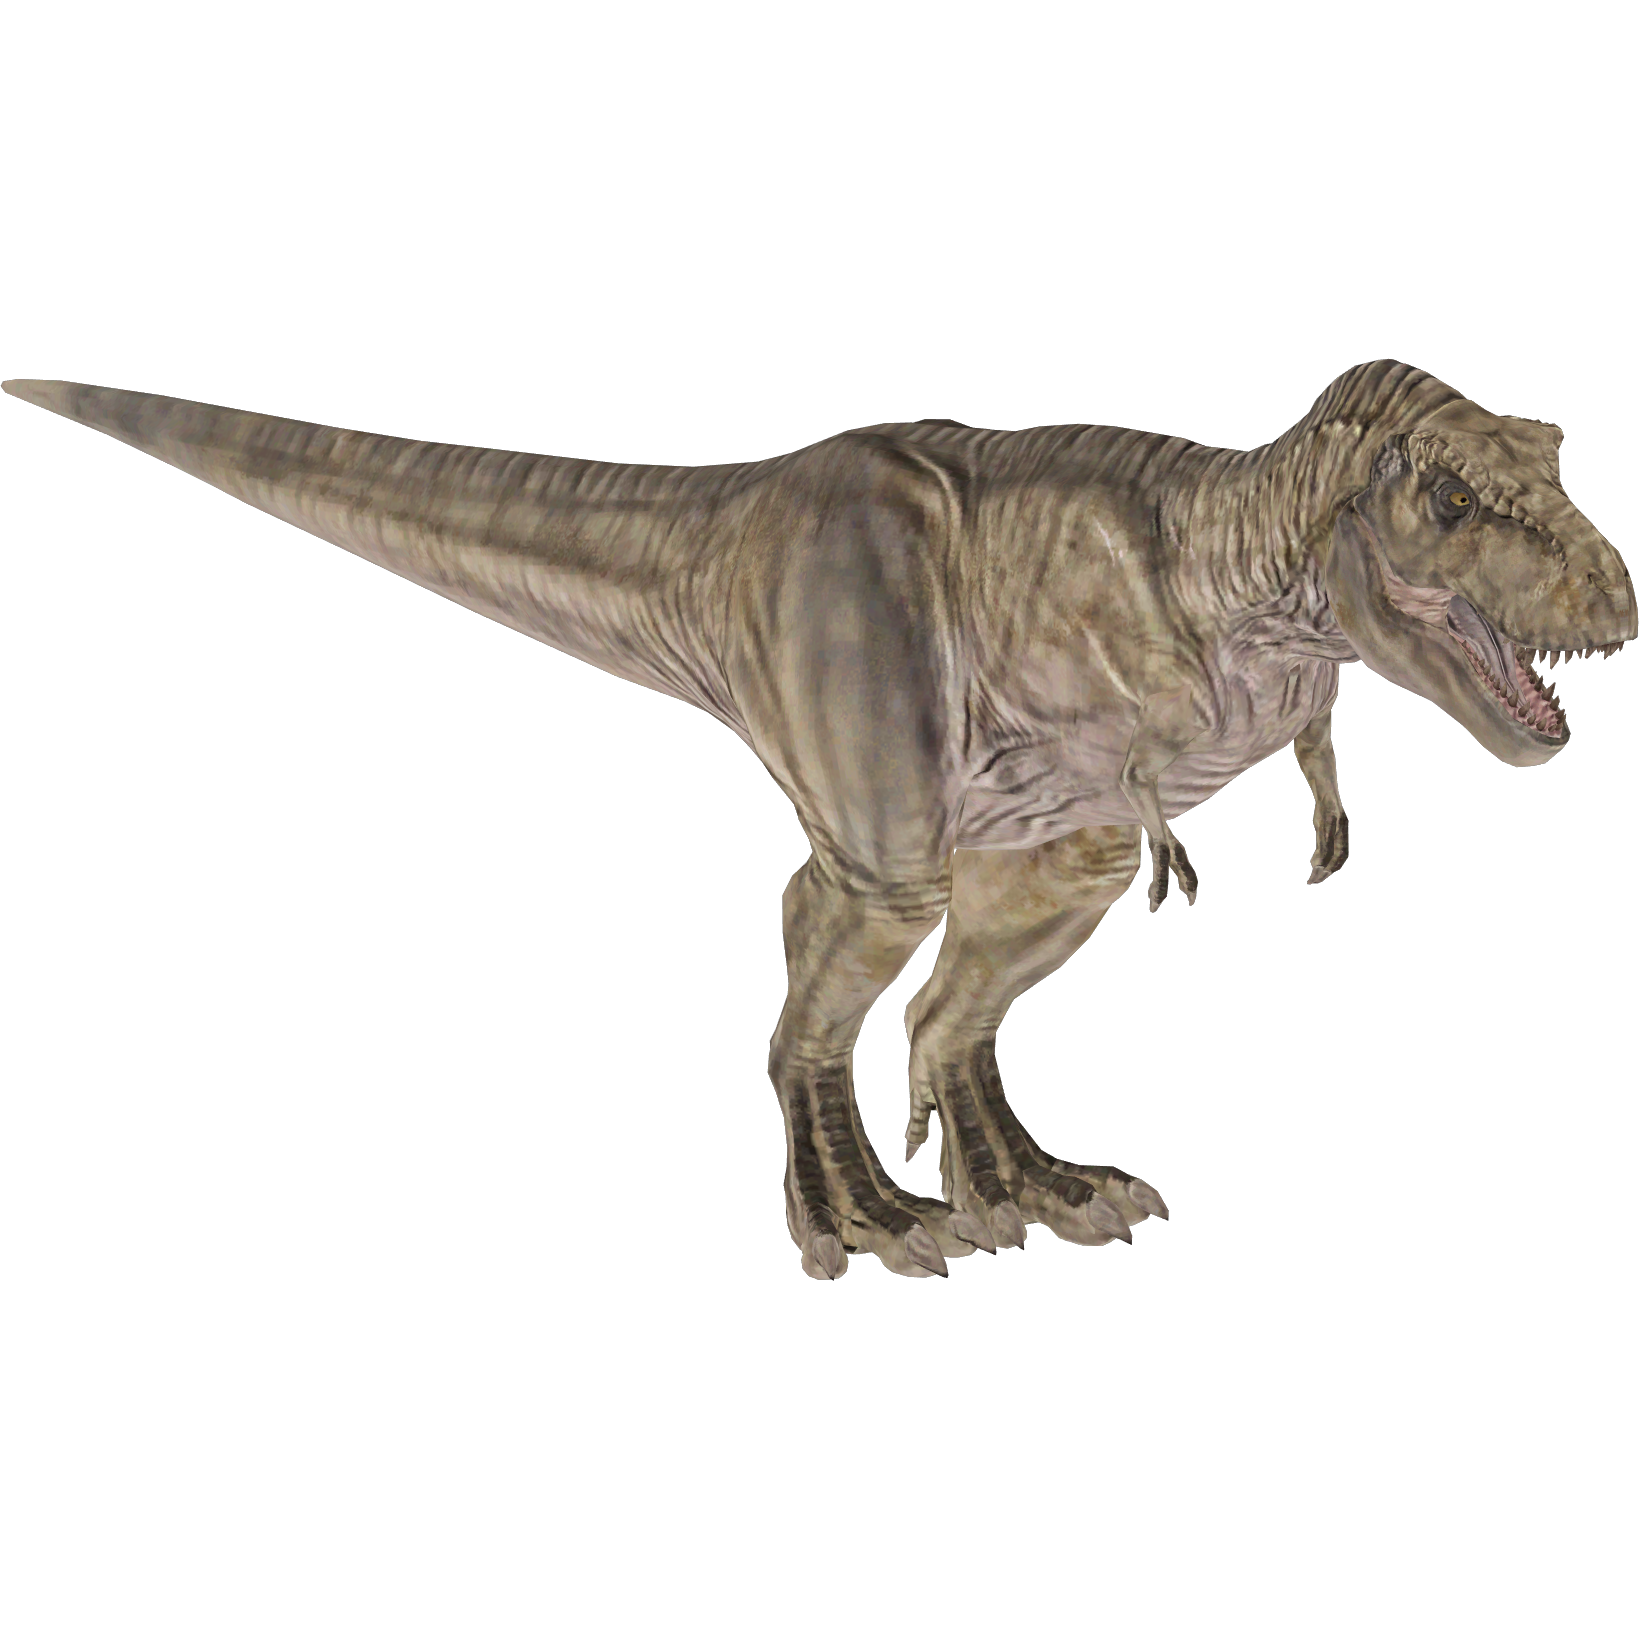 Zoo Tycoon 2 T-Rex by SSJGarfield on DeviantArt